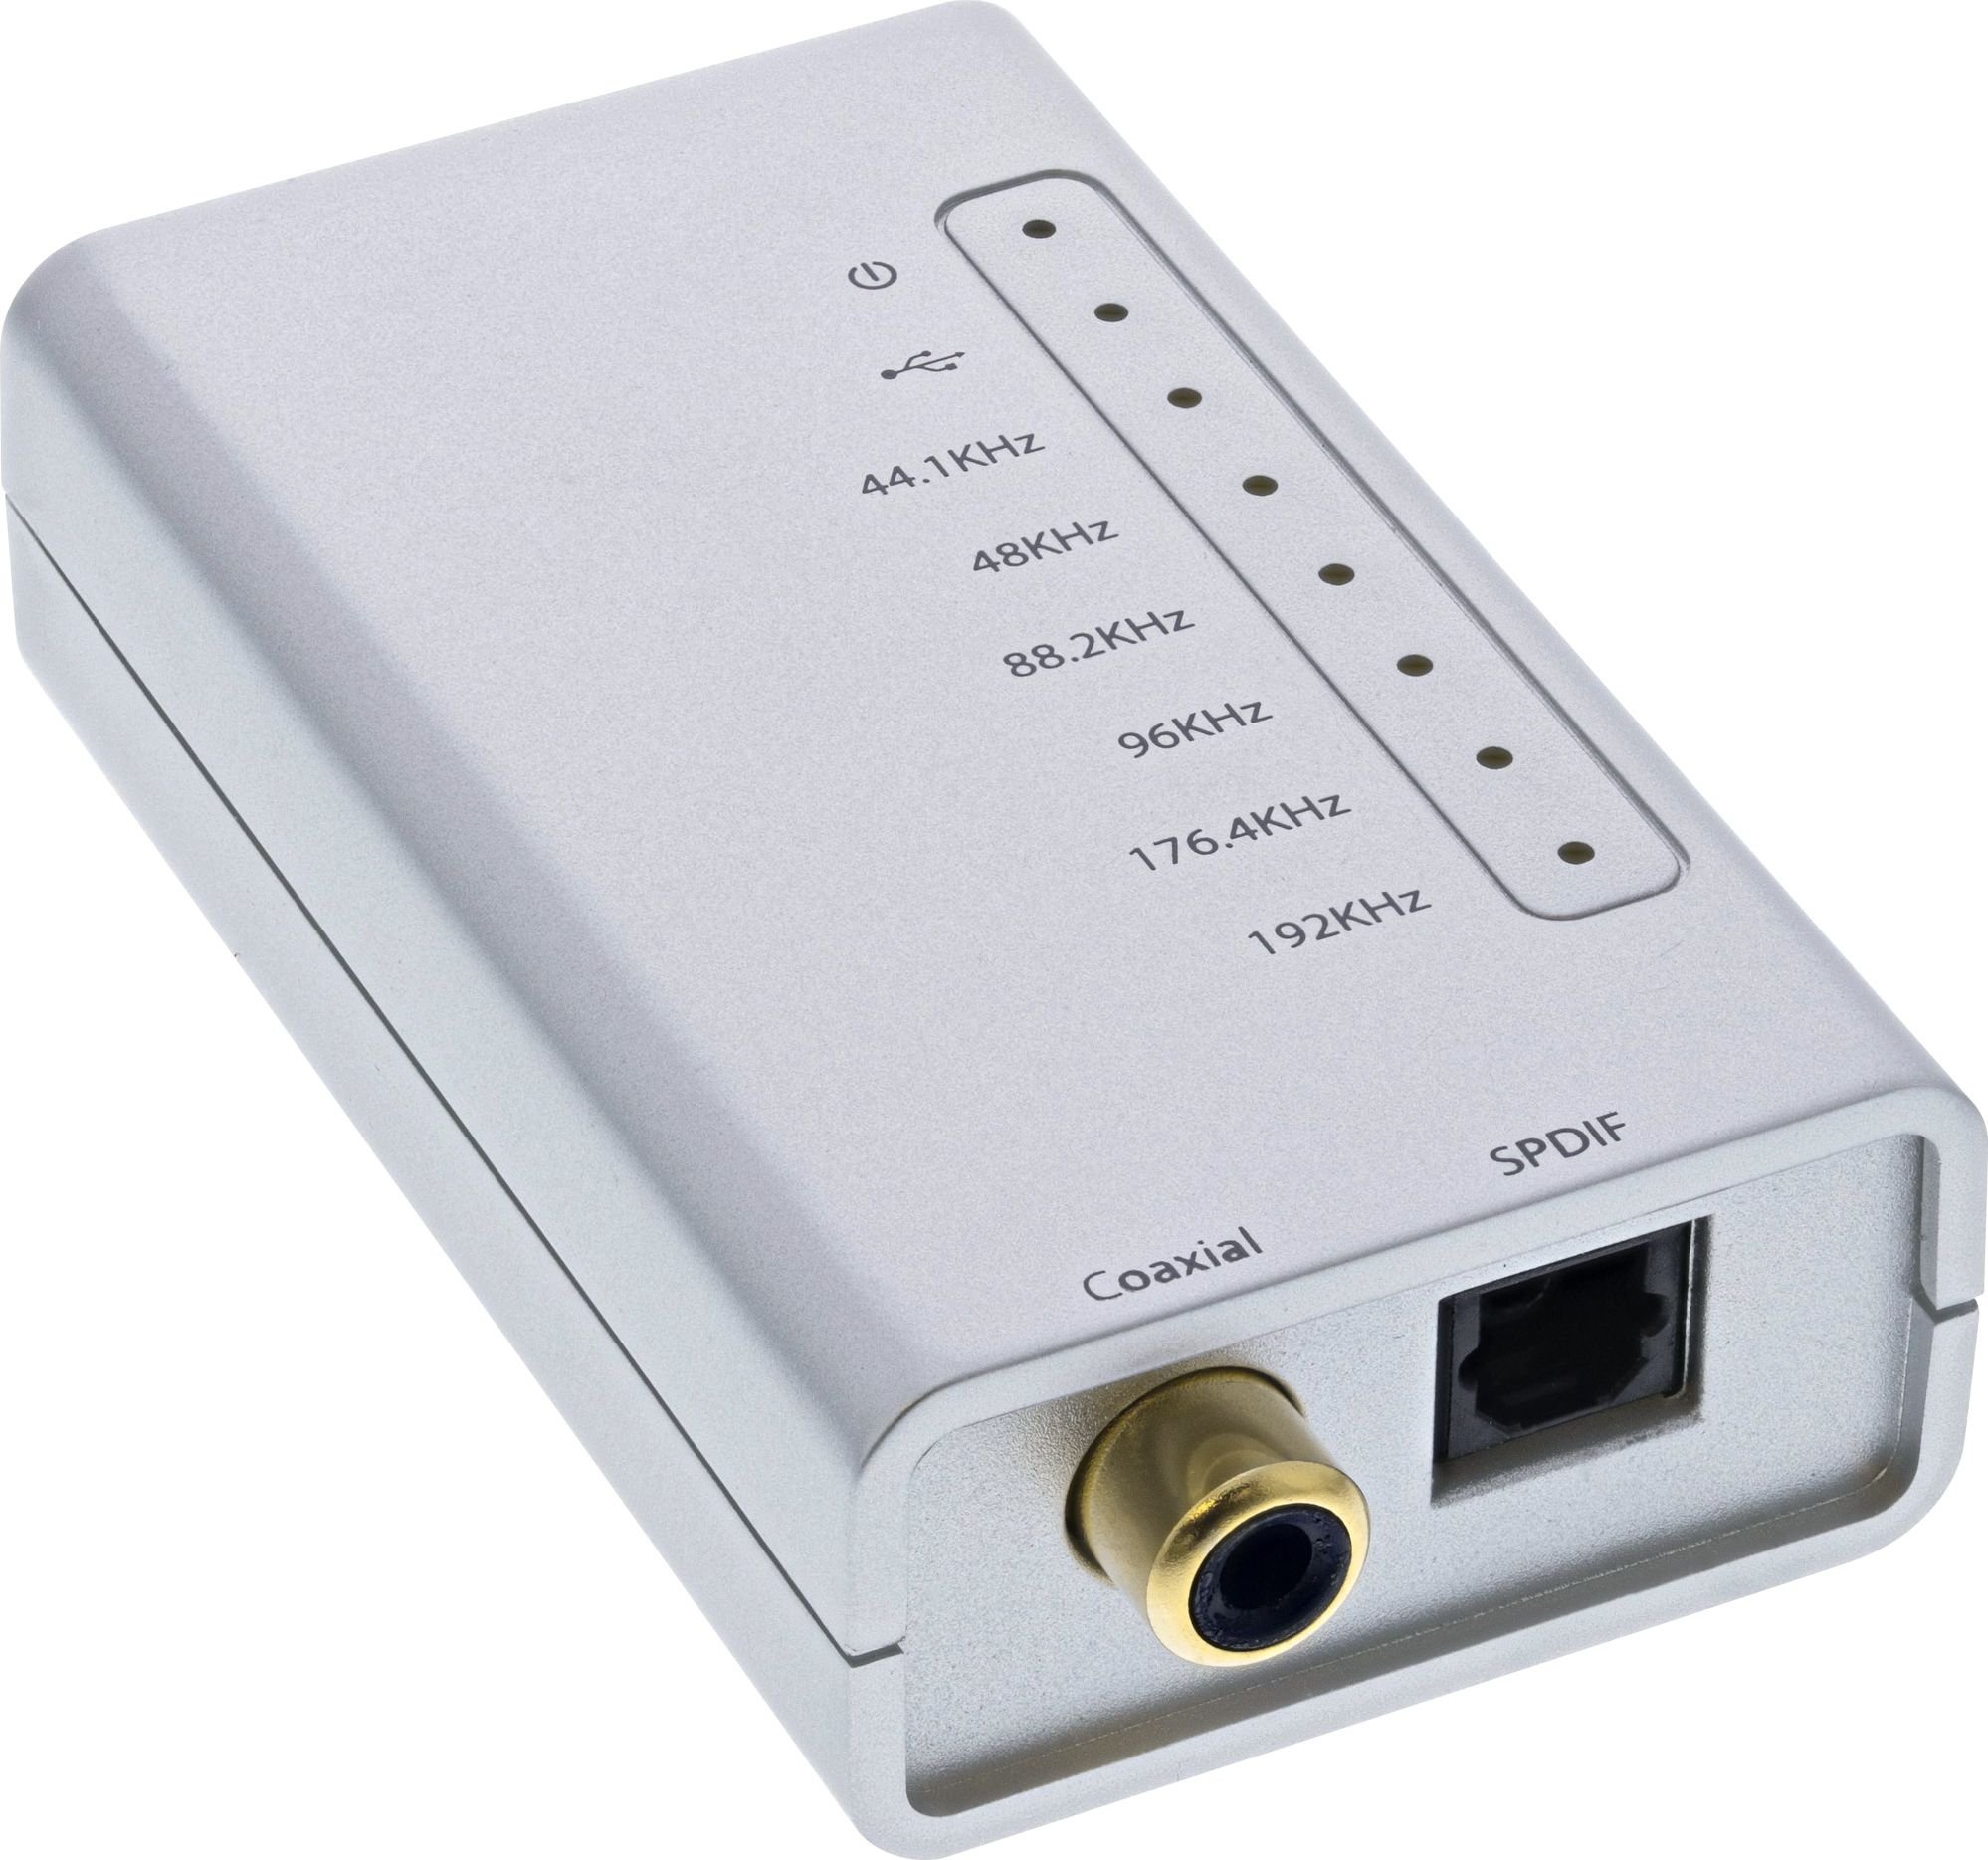 Placi de sunet - USB - Digital coaxial Conector / Toslink / I2S 33053I